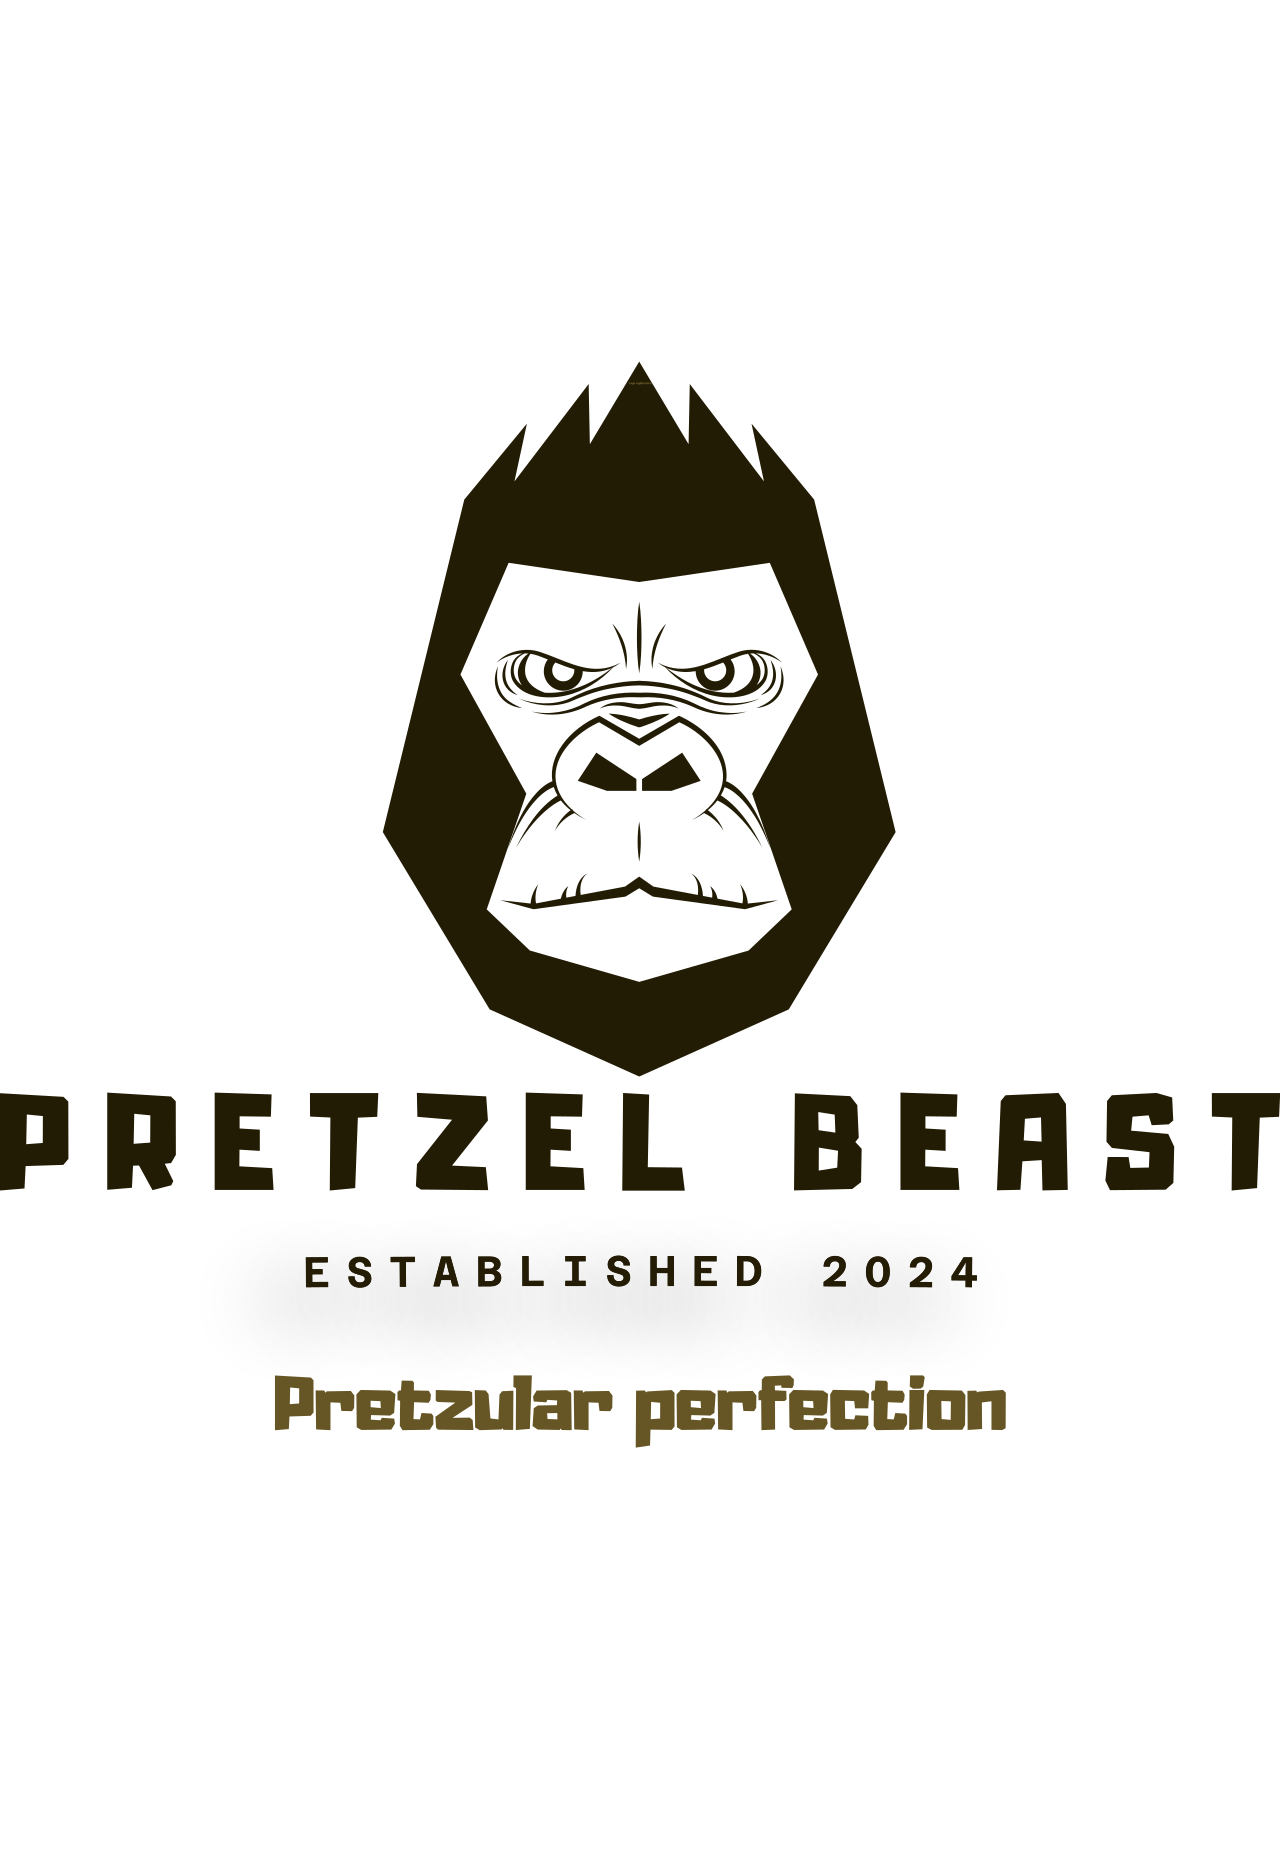 Pretzel Beast's logo